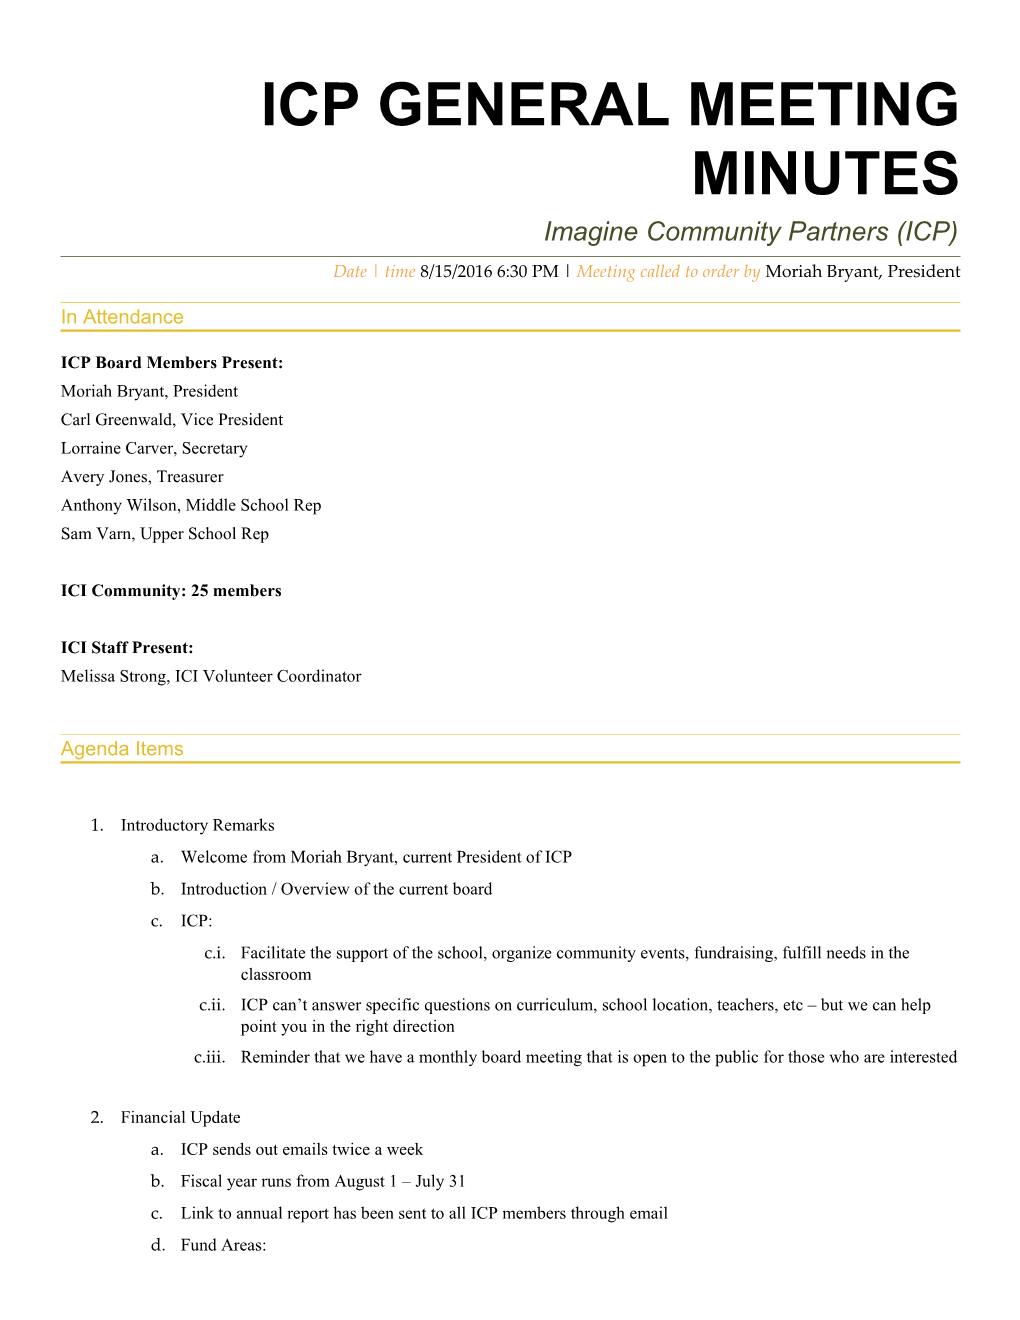 ICP General Meeting MINUTES